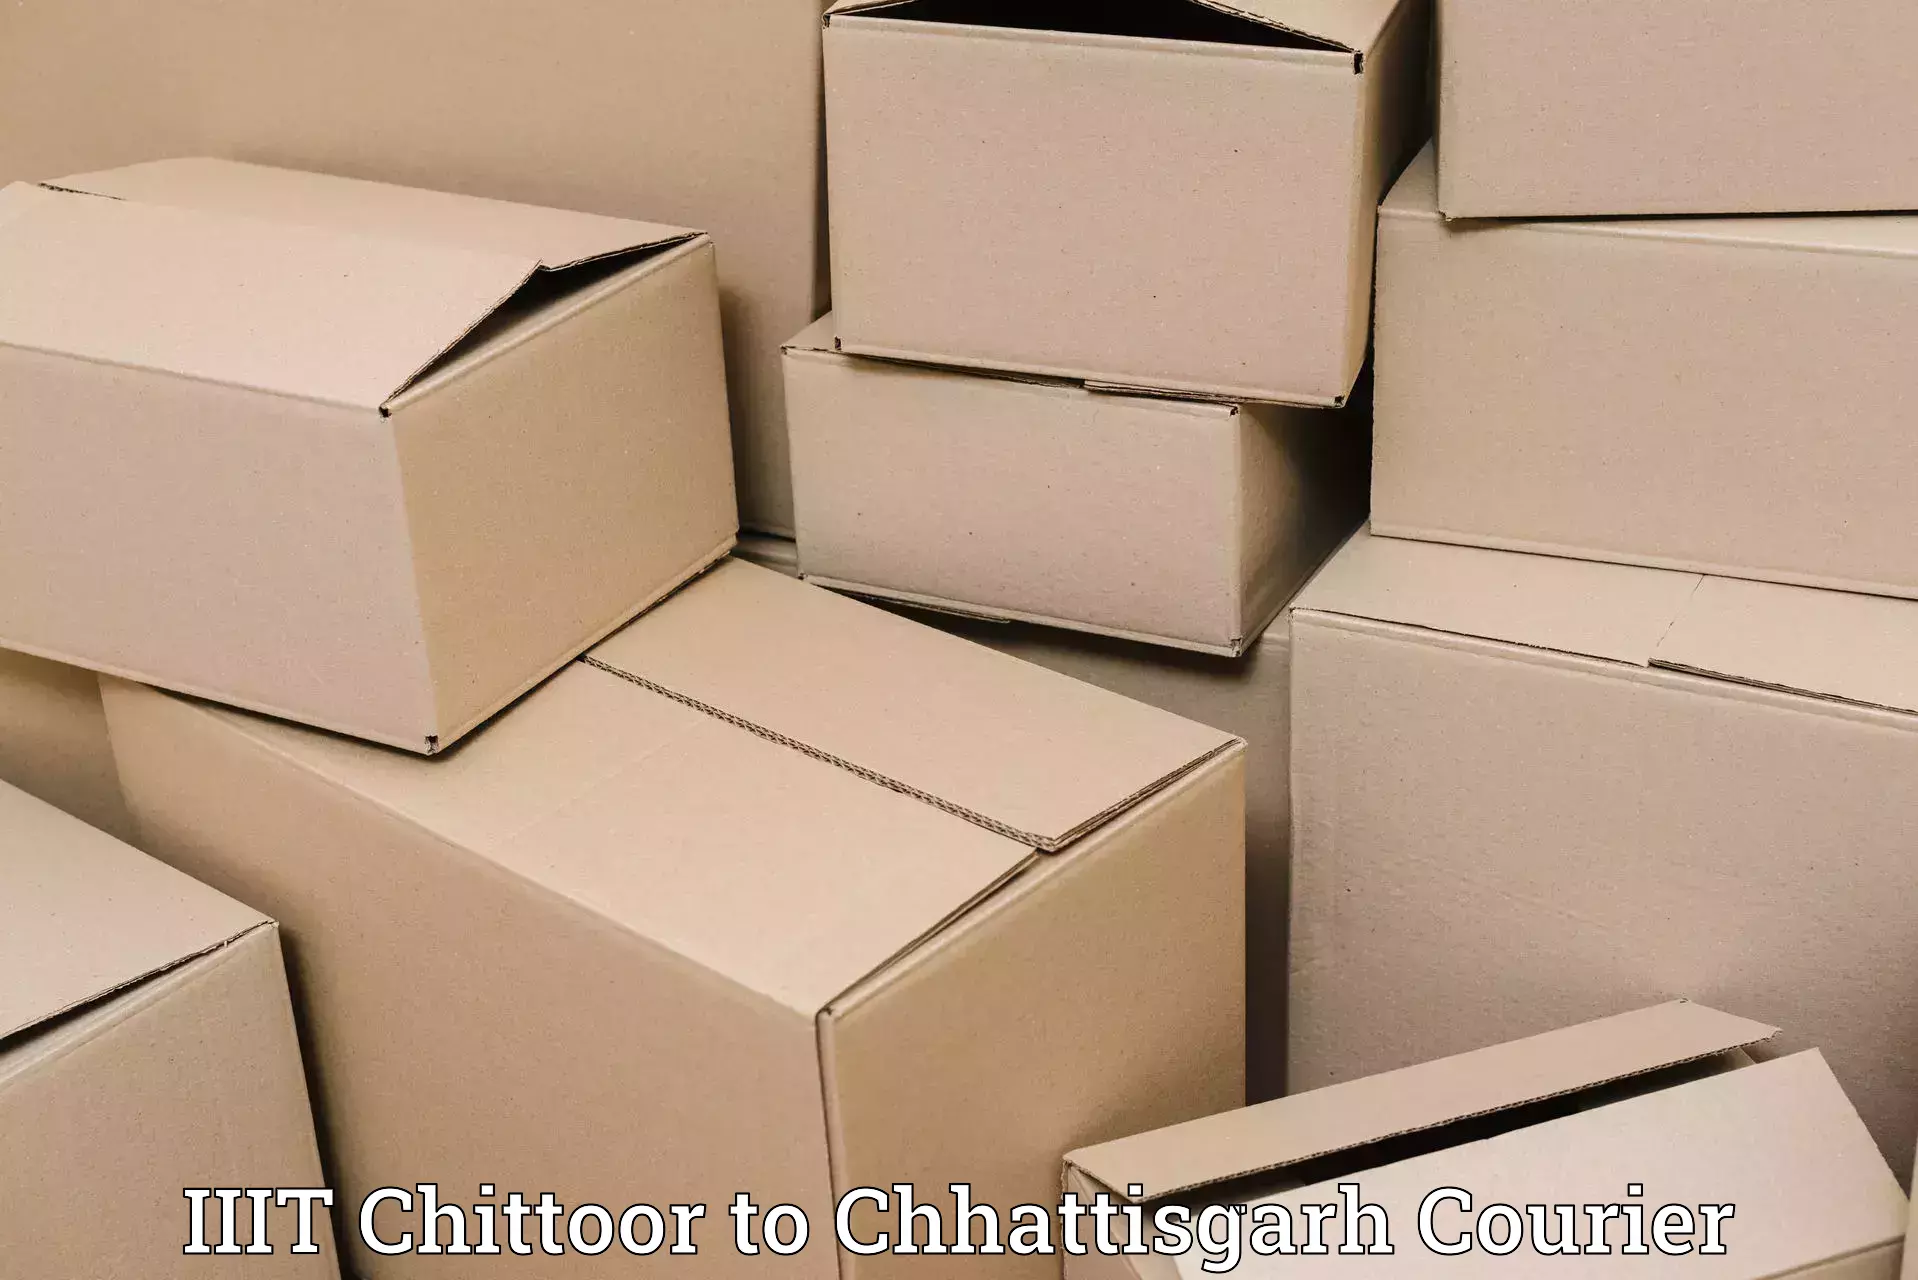 Comprehensive freight services IIIT Chittoor to Raigarh Chhattisgarh